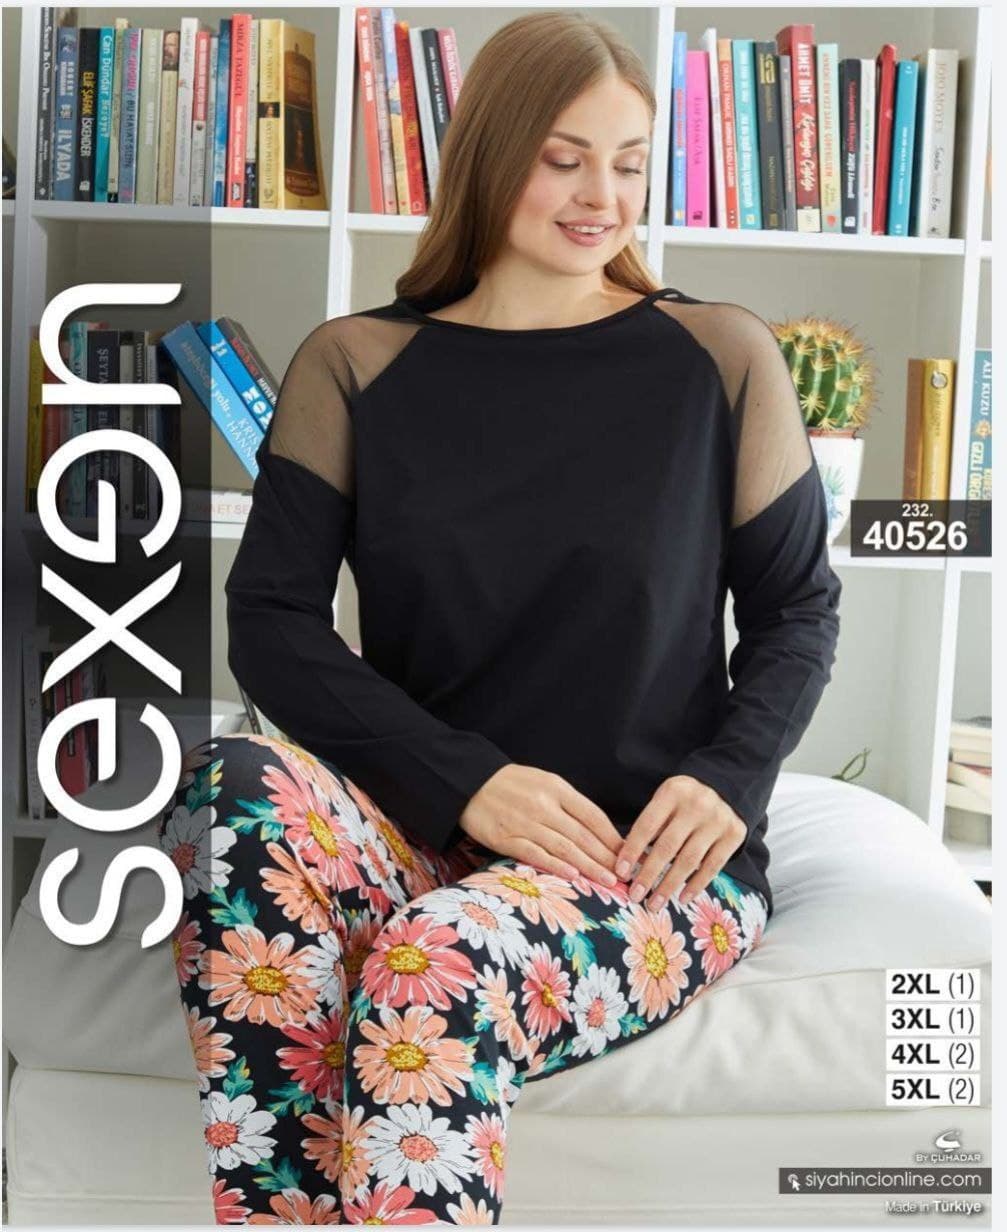 سکسن | Sexen - ست تیشرت پاییزه و شلوار گل گلی زنانه سایز بزرگ 40526 ترک